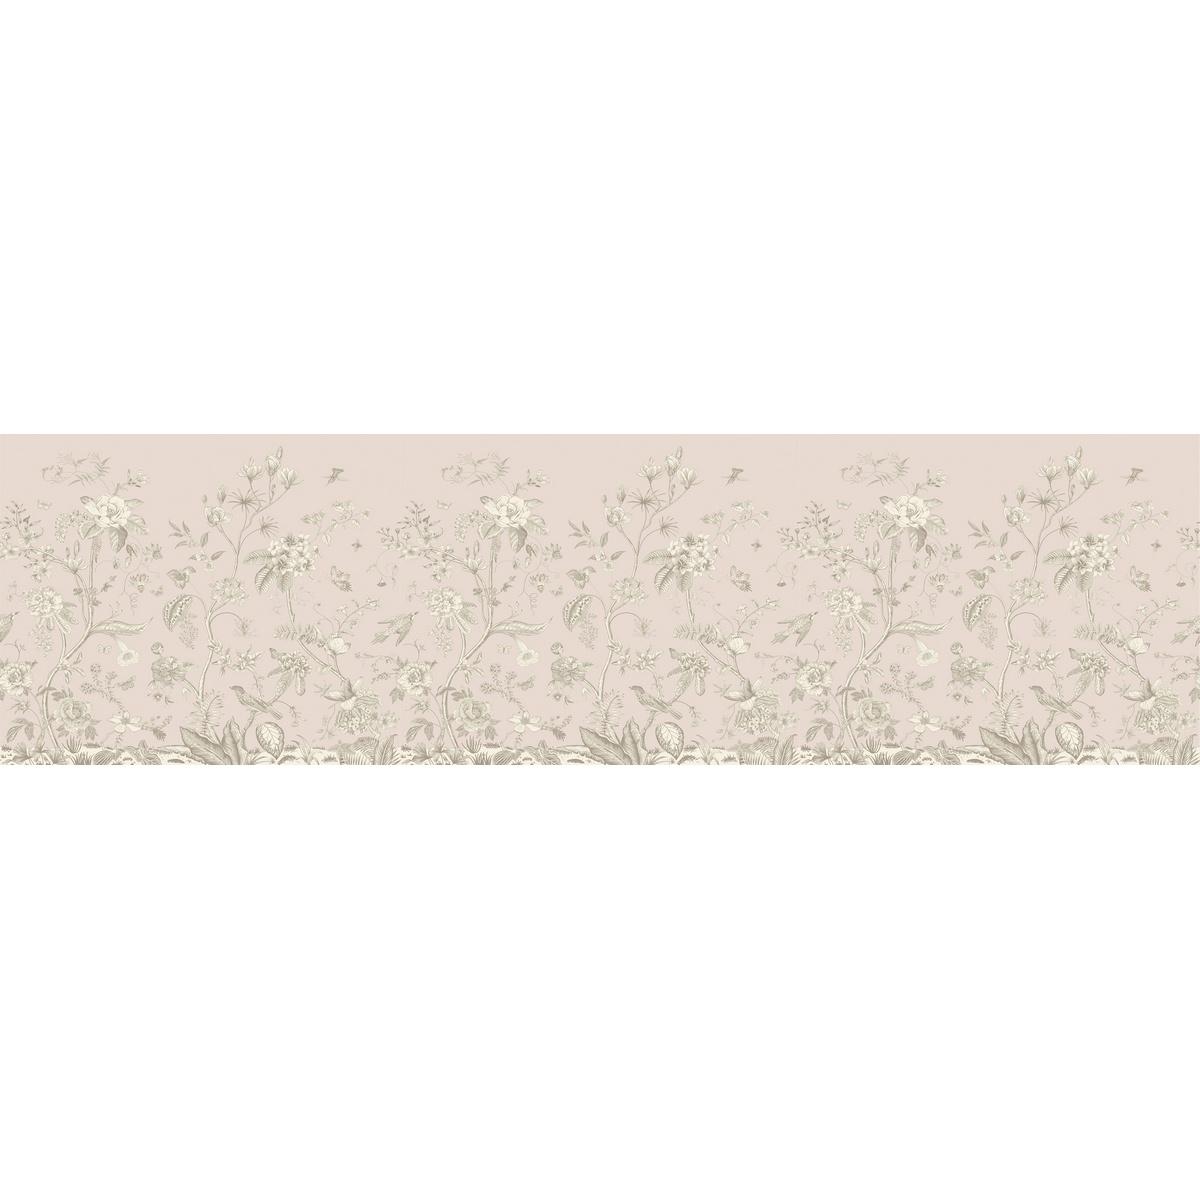 Old graphic florals öntapadó bordűr, 500 x 13,8 cm